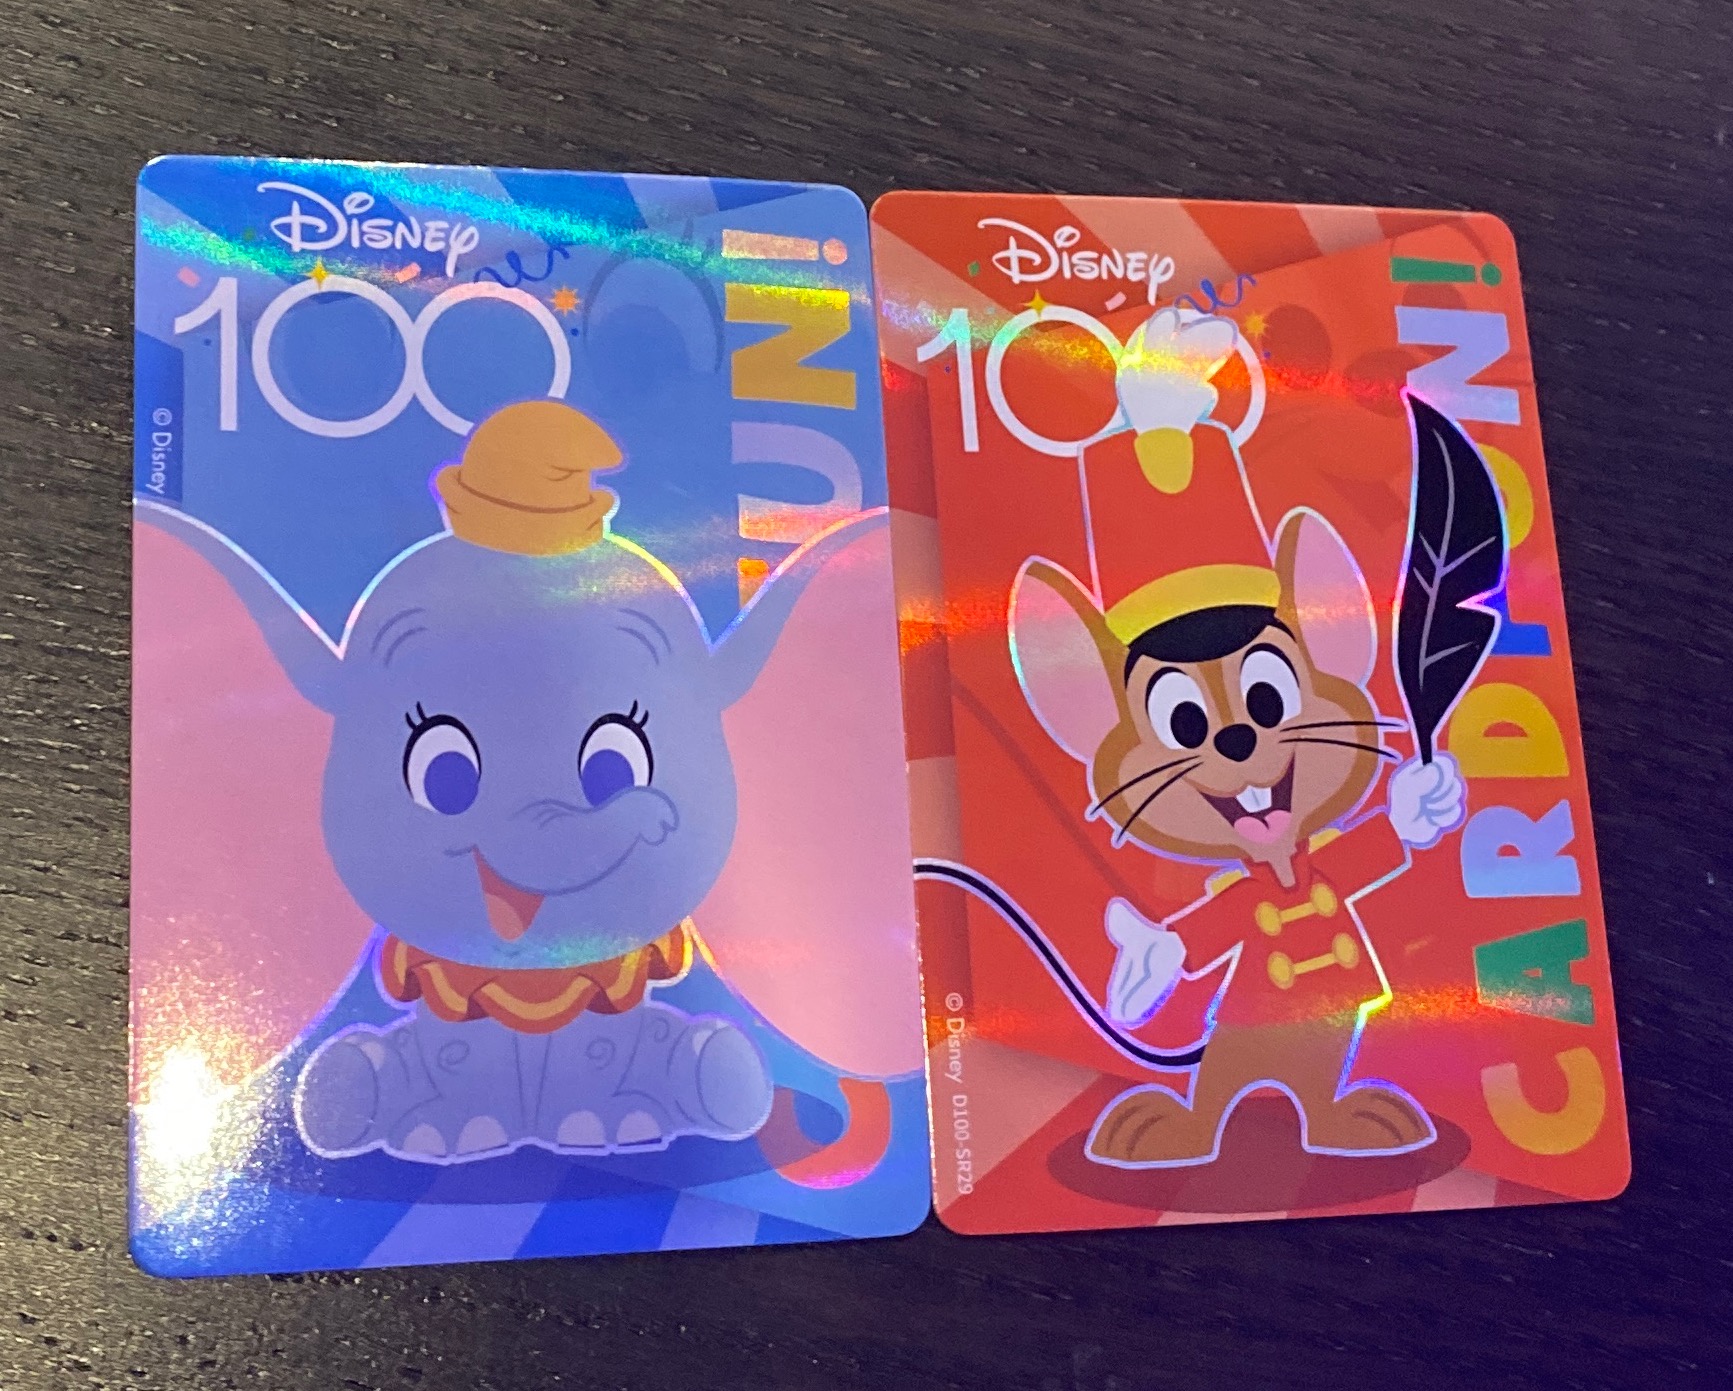 Joyful card fun Dumbo cards